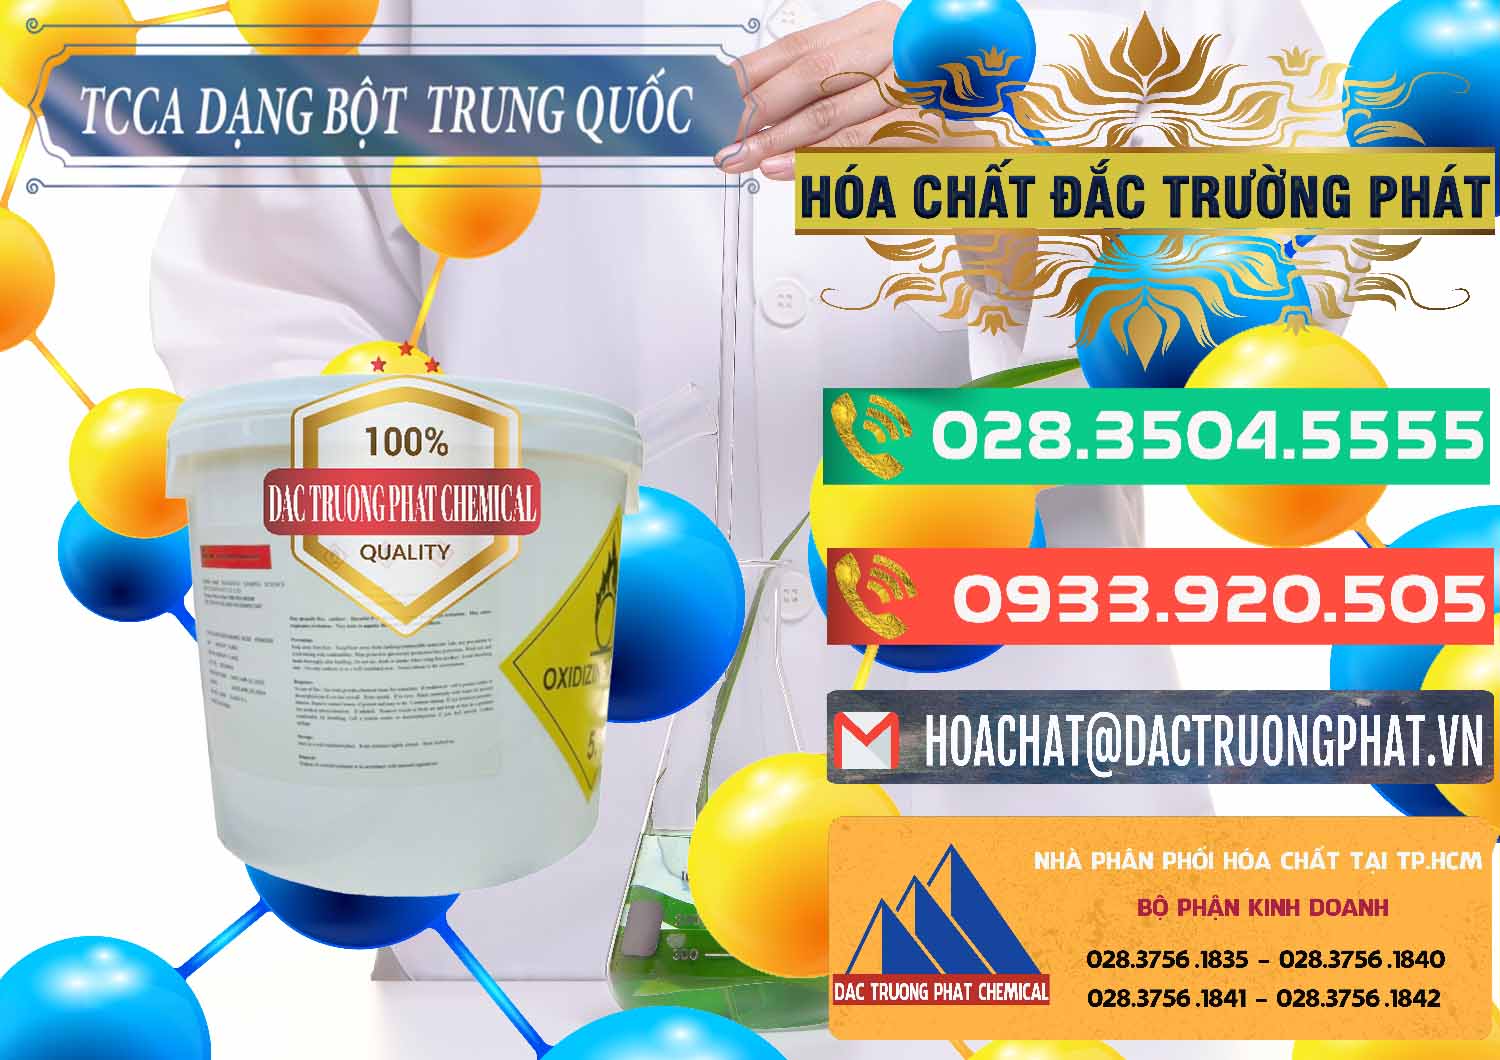 Nơi chuyên cung cấp và bán TCCA - Acid Trichloroisocyanuric Dạng Bột Thùng 5kg Trung Quốc China - 0378 - Cty chuyên cung cấp - kinh doanh hóa chất tại TP.HCM - congtyhoachat.com.vn